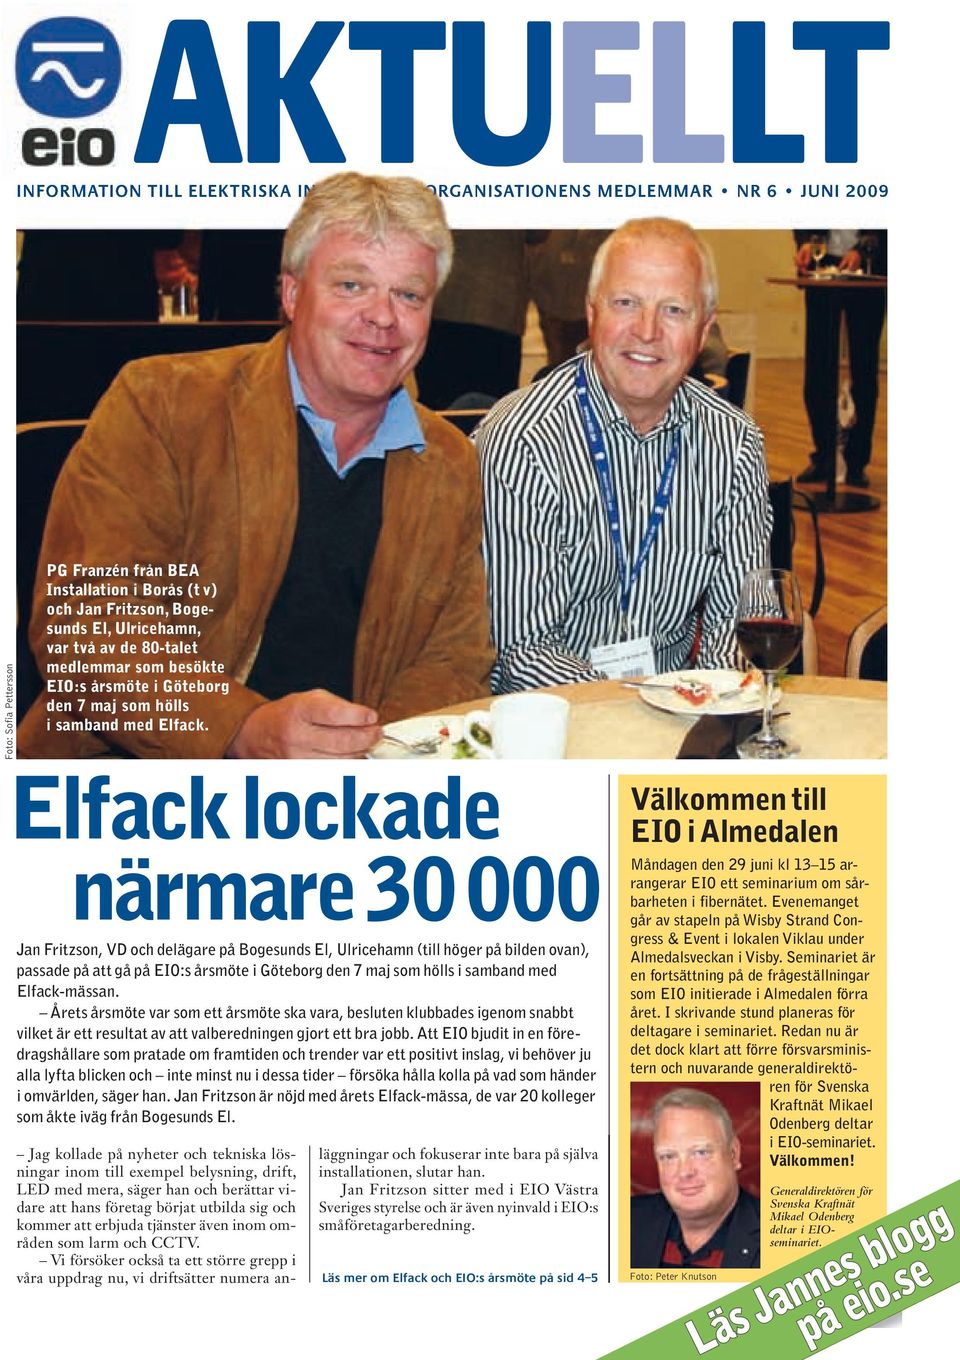 Elfack lockade närmare 30 000 Jan Fritzson, VD och delägare på Bogesunds El, Ulricehamn (till höger på bilden ovan), passade på att gå på EIO:s årsmöte i Göteborg den 7 maj som hölls i samband med